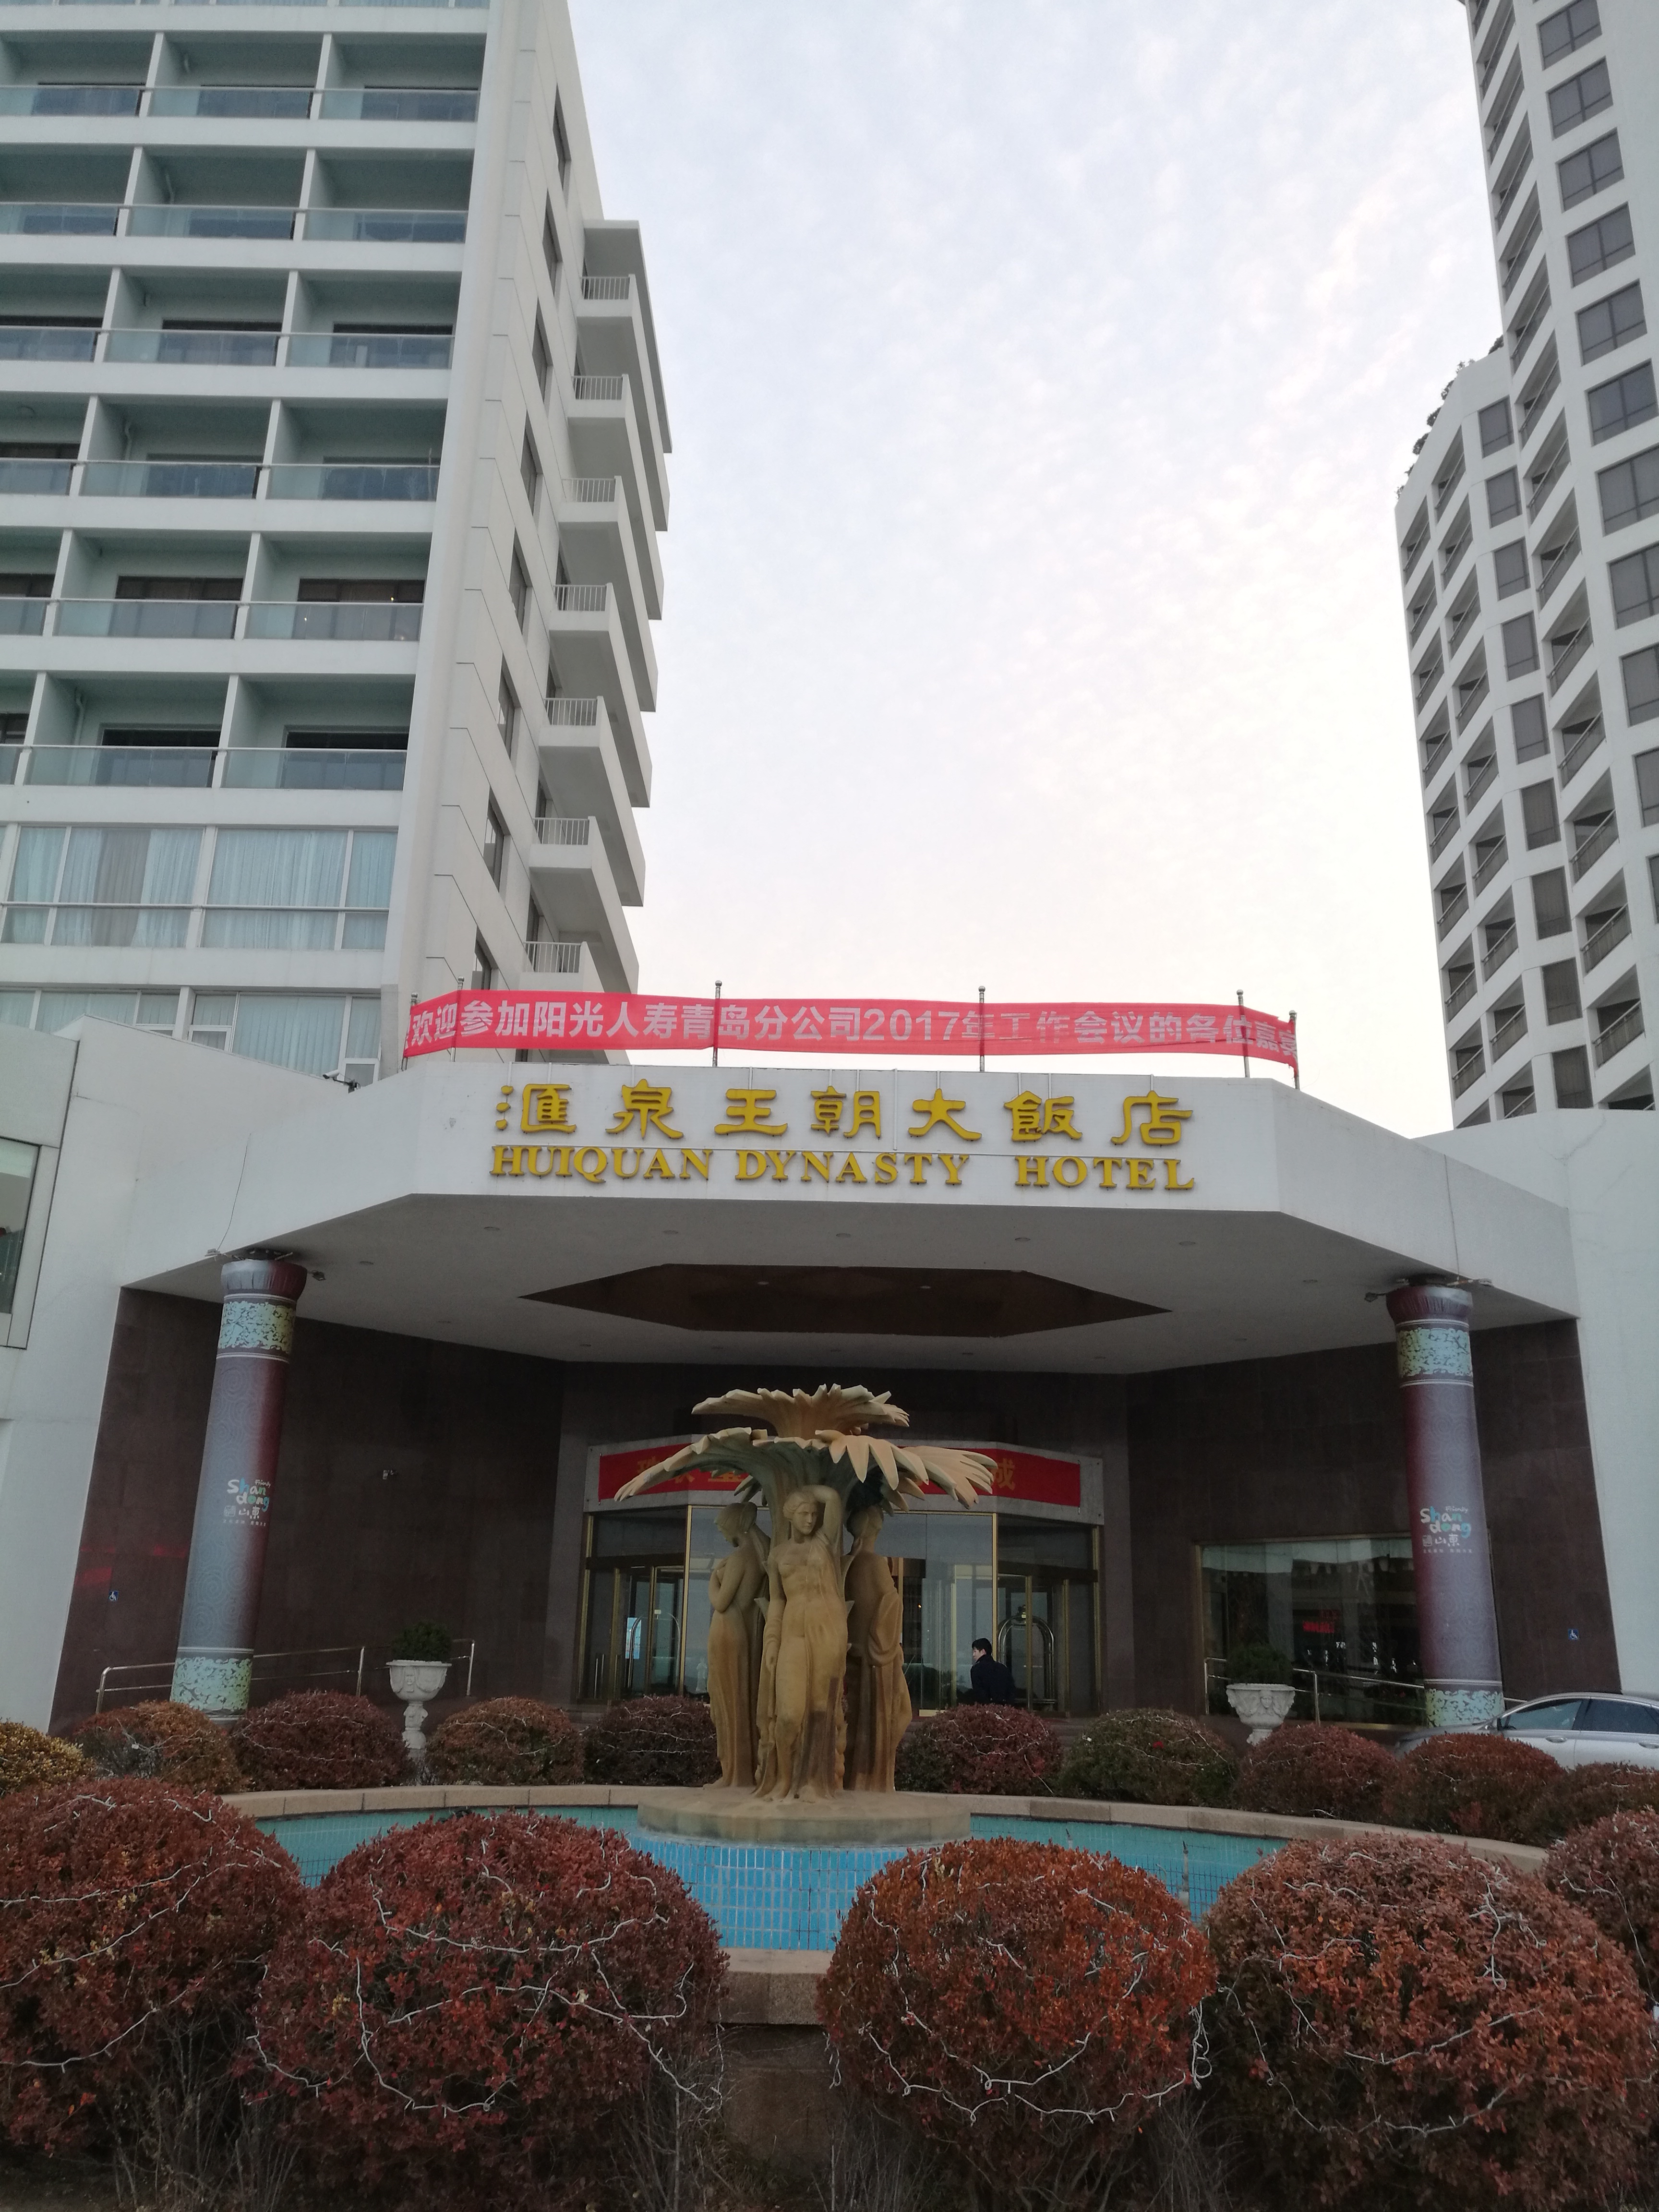 青岛汇泉王朝大饭店,是五星级的酒店,位置很好,楼下海边就是著名的